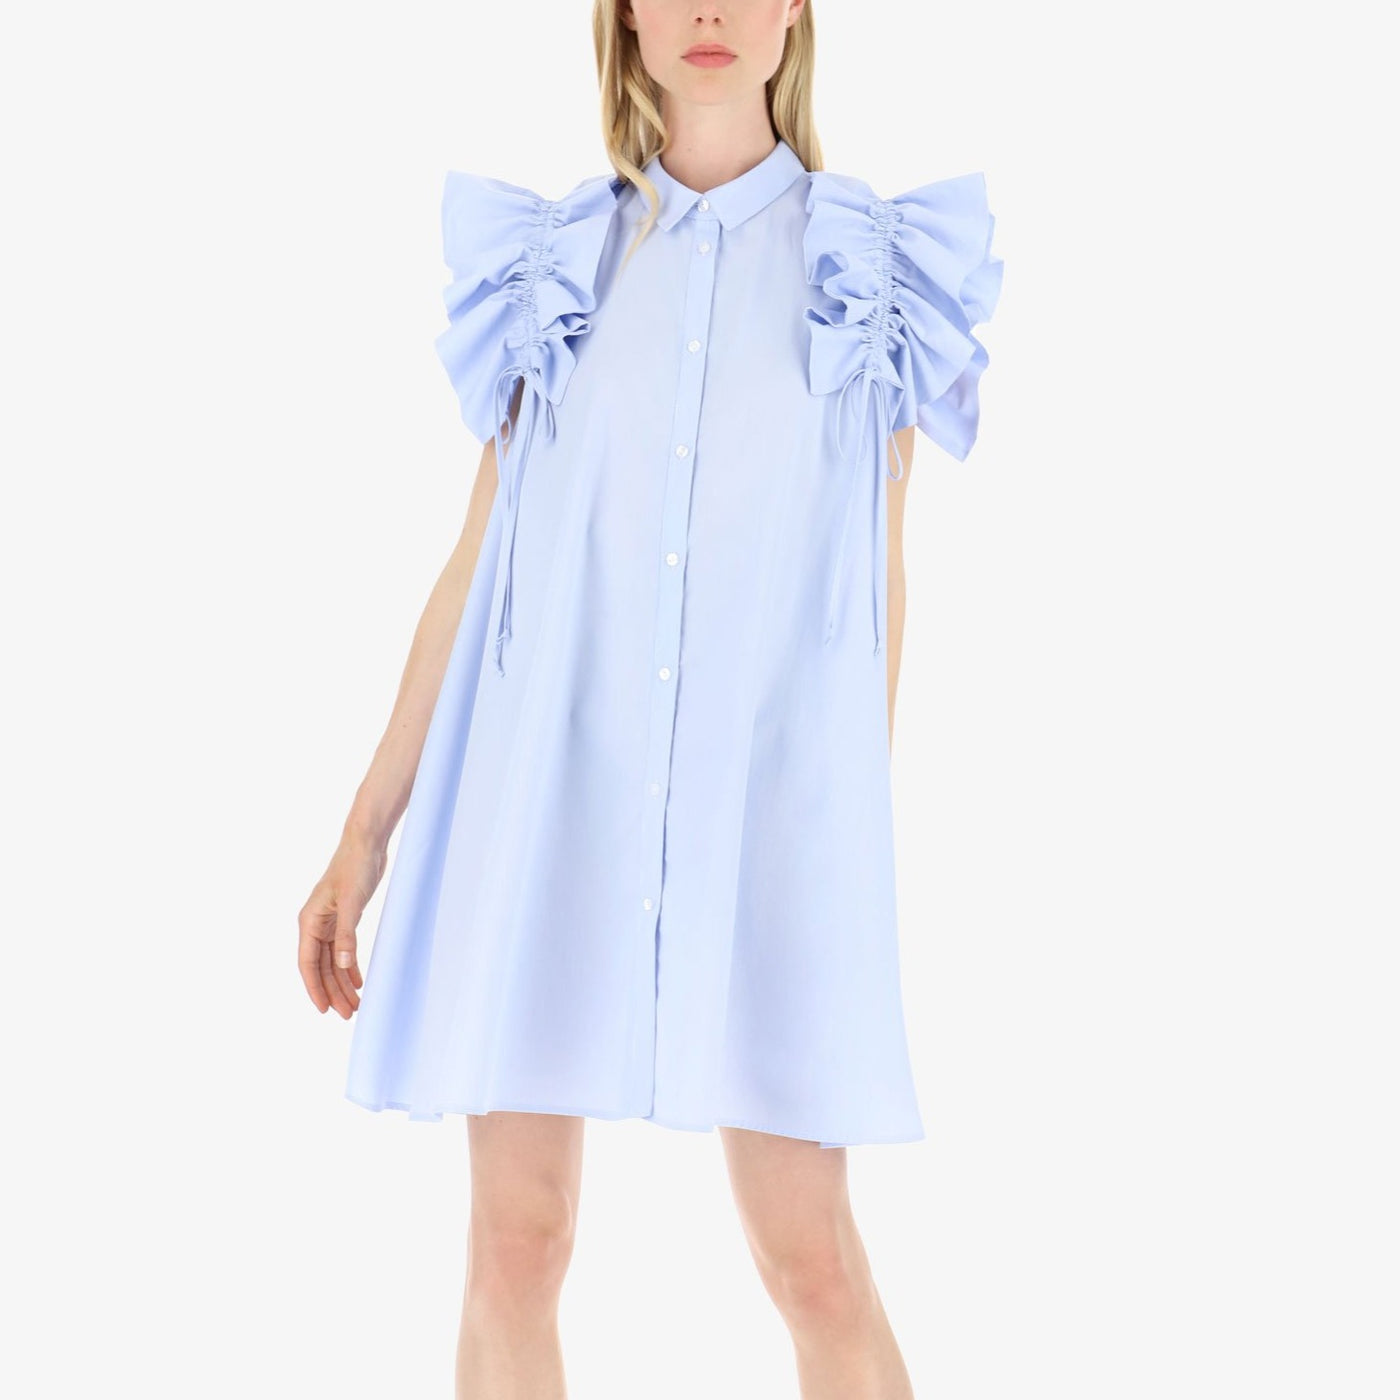 Ljusblå skjortklänning med volanger - Latalia.se